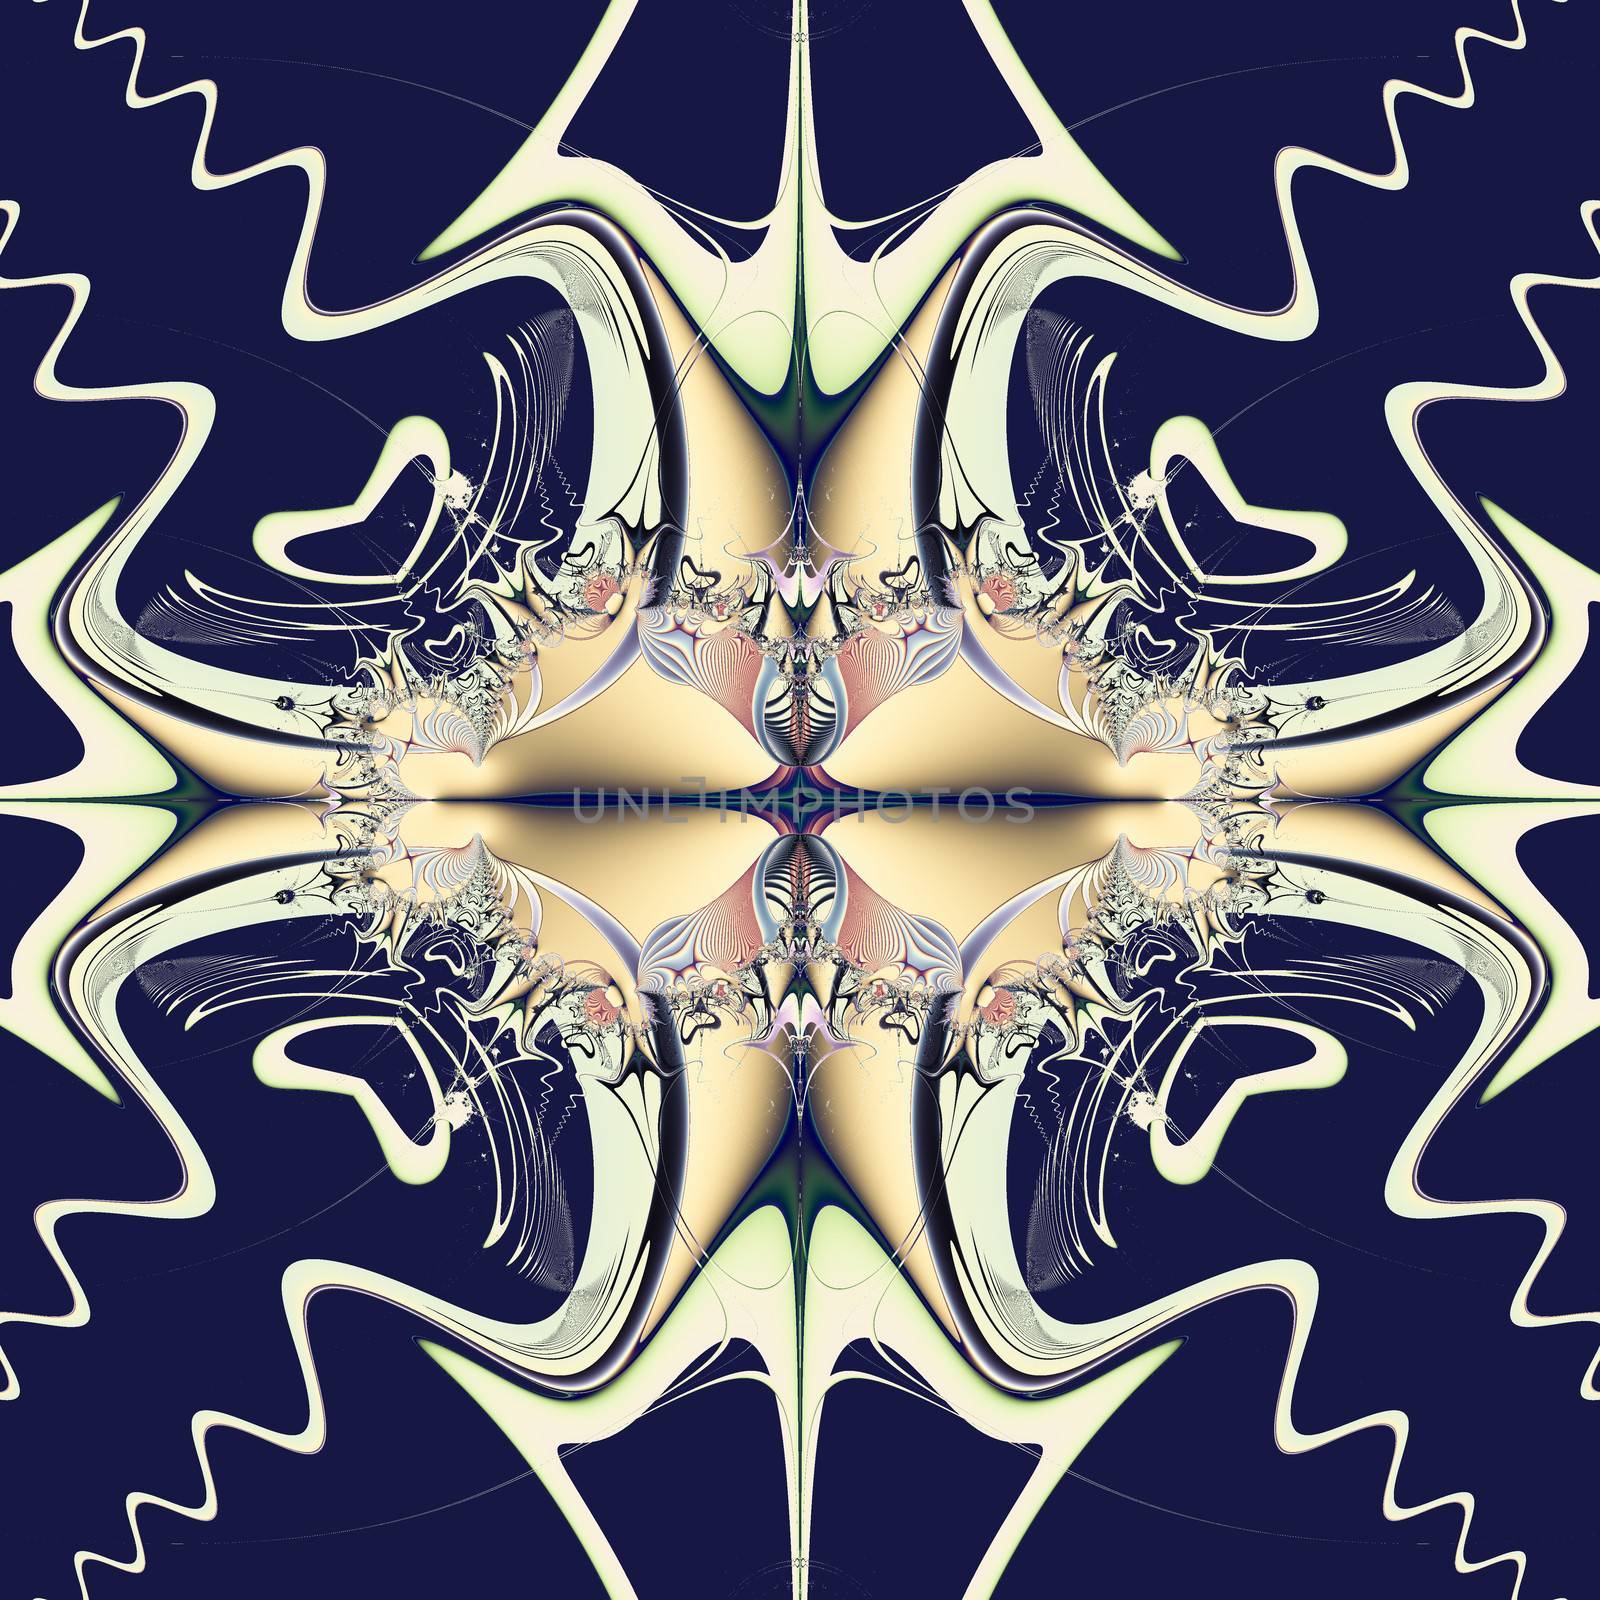 Elegant fractal design, abstract art, celtic cross